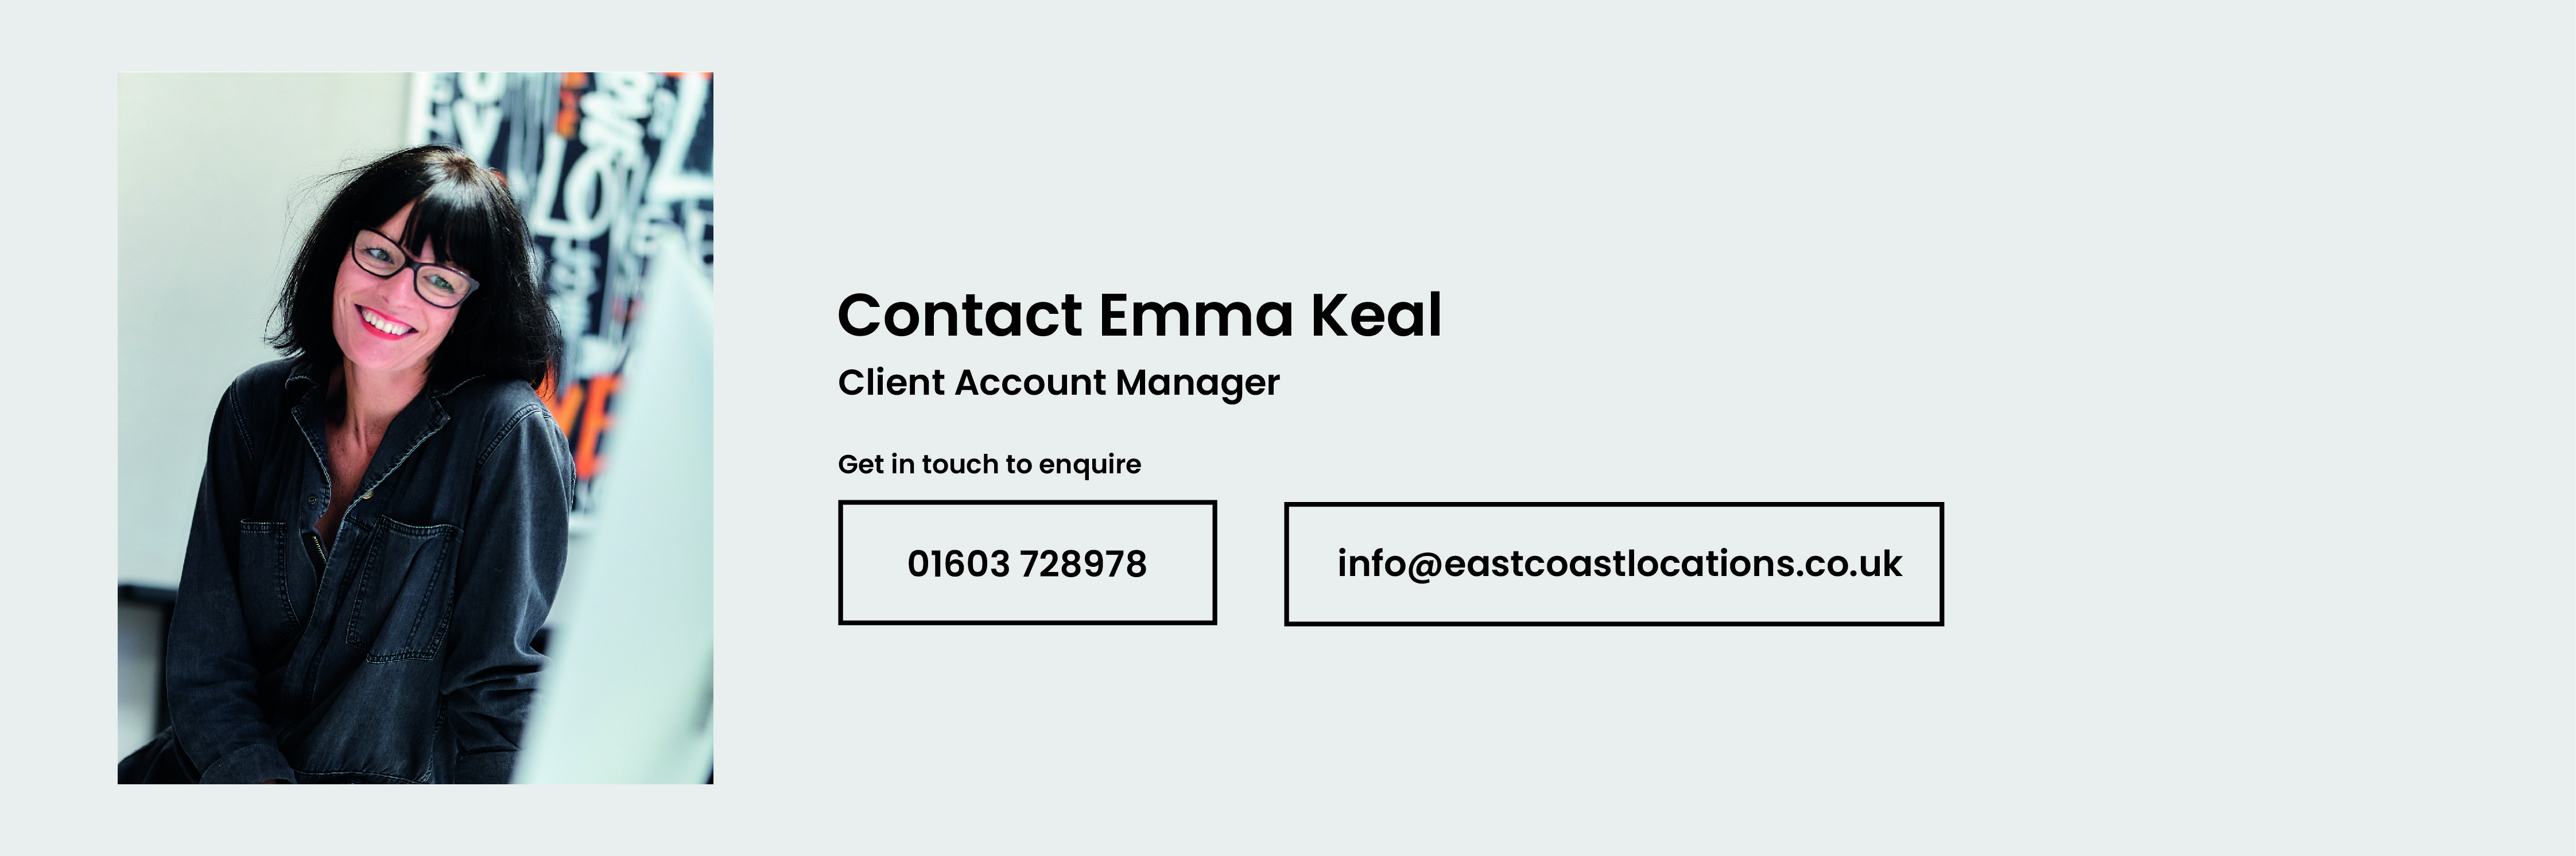 Contact Emma Keal